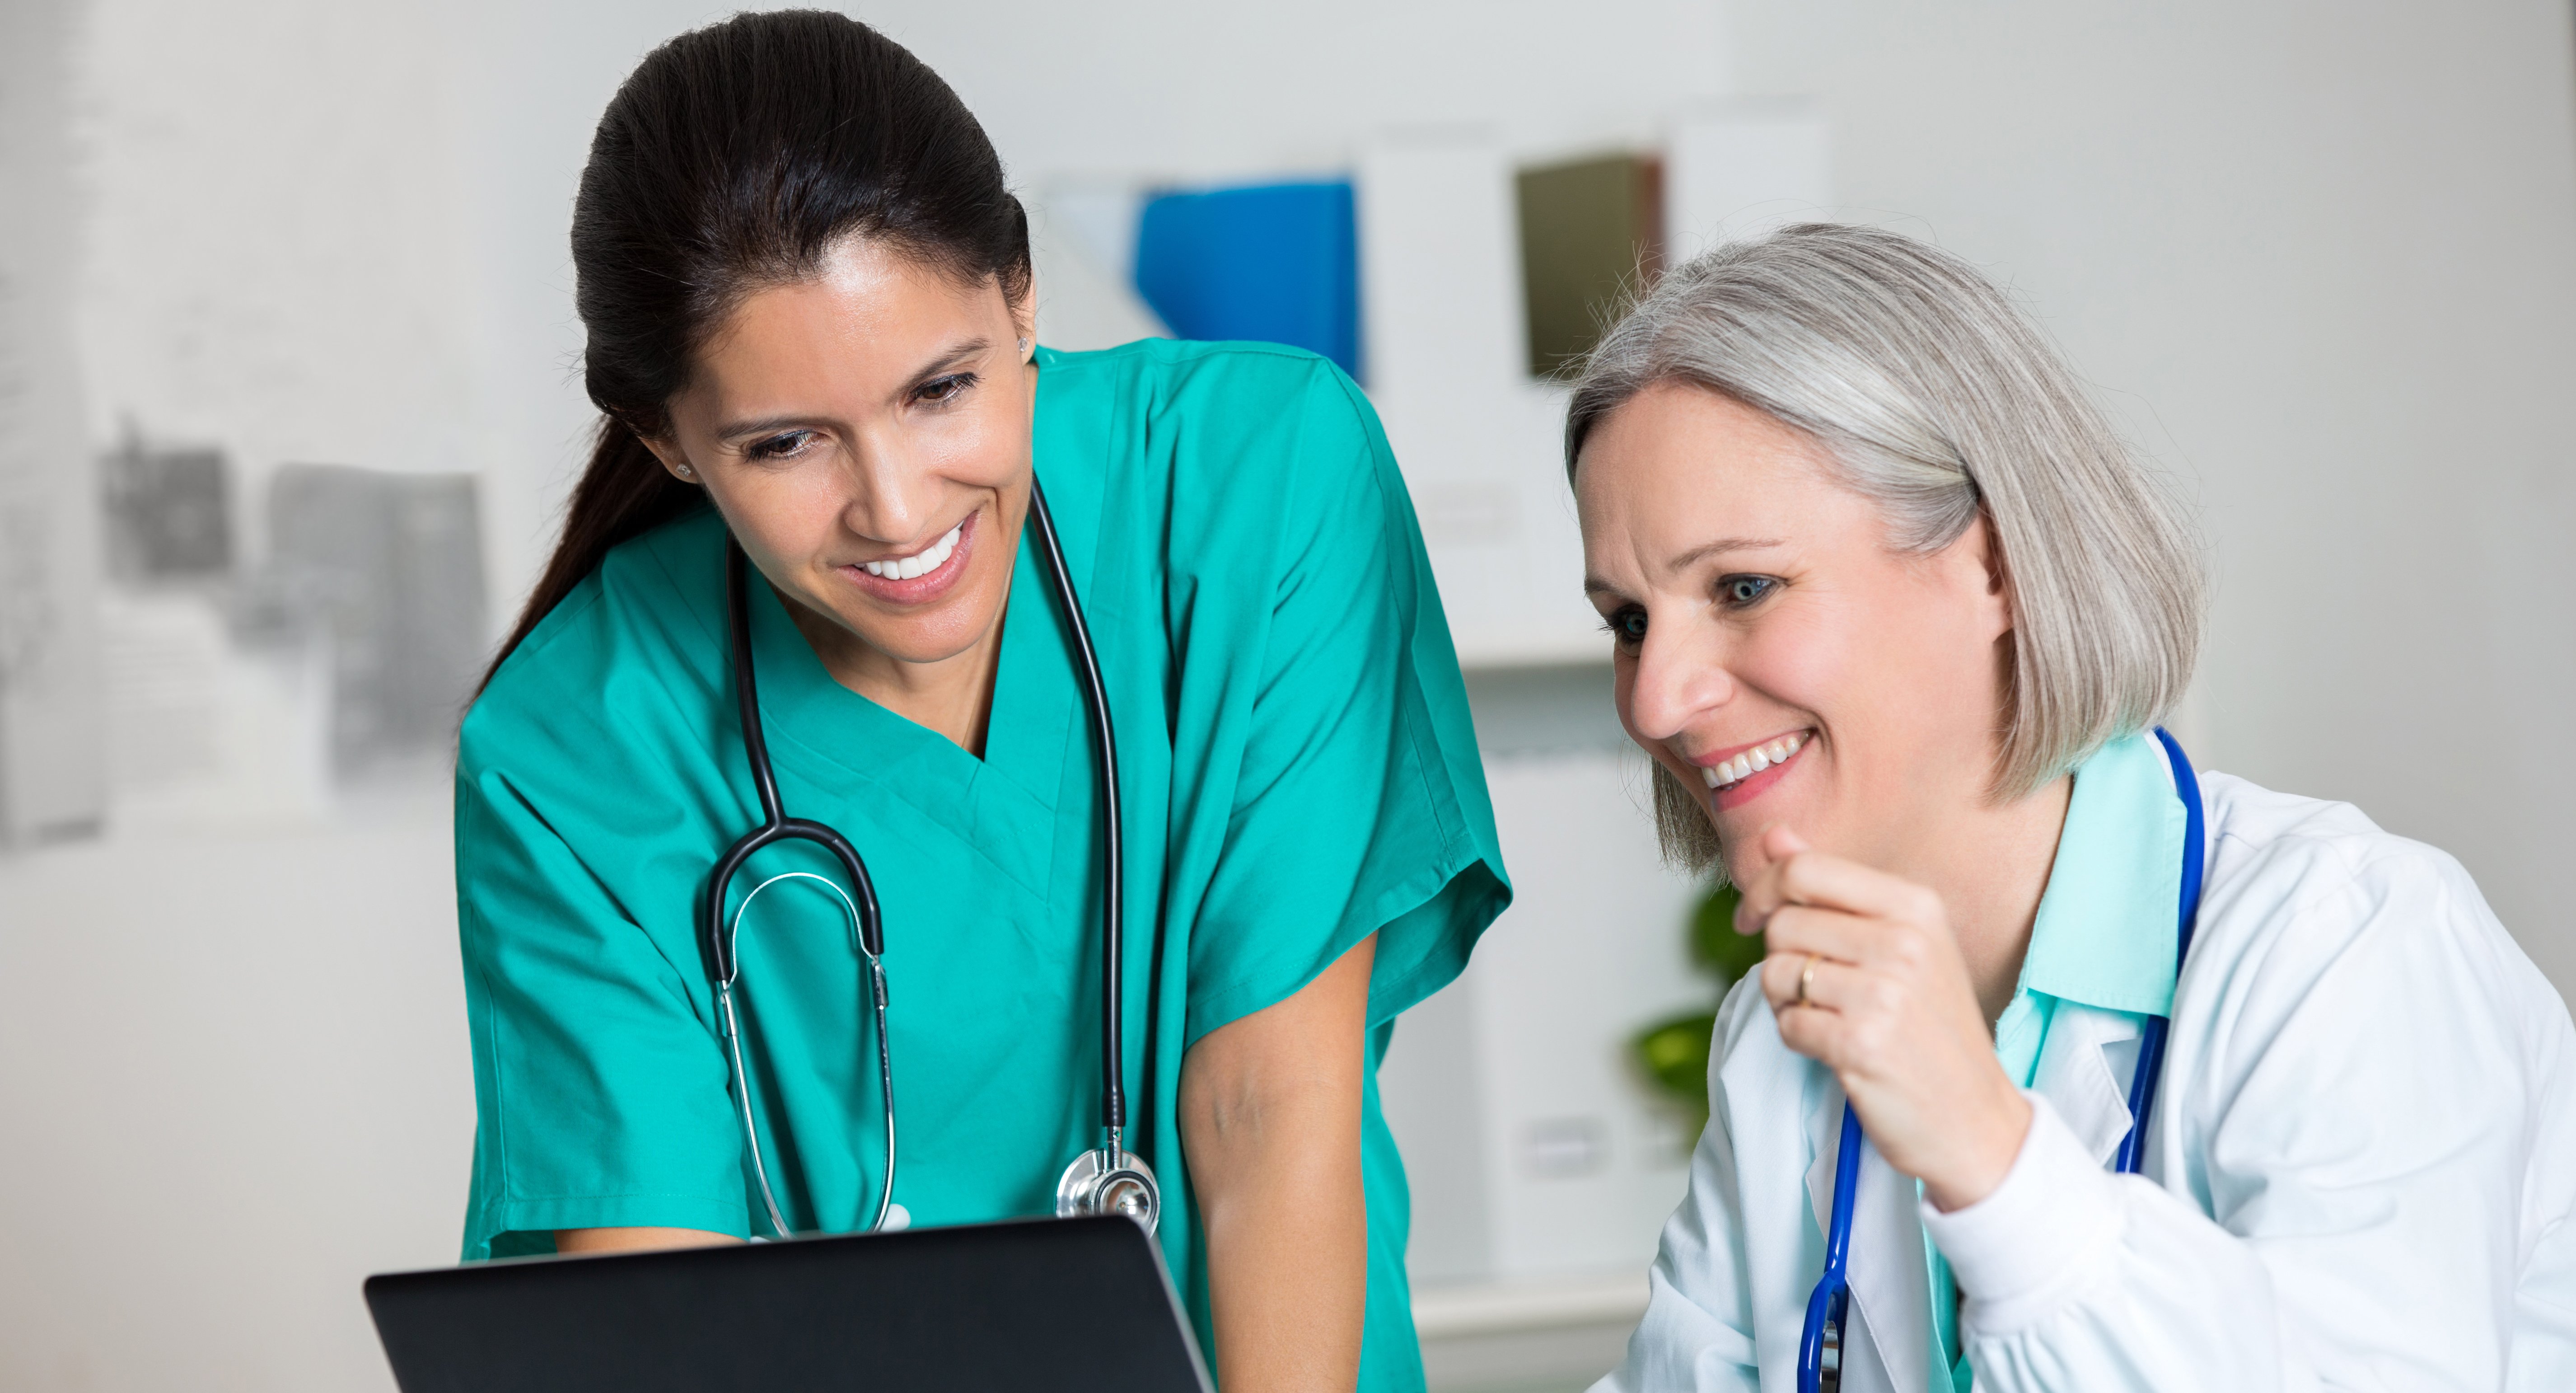 Das Bild zeigt eine sitzende etwas ältere Frau in weißem Kittel mit Stetoskop vor einem Rechner und eine zweite Frau in grünem Kasak mit stetoskop stehend nach vorn gebeugt daneben. Sie schauen zusammen auf den Bildschirm und lächeln.